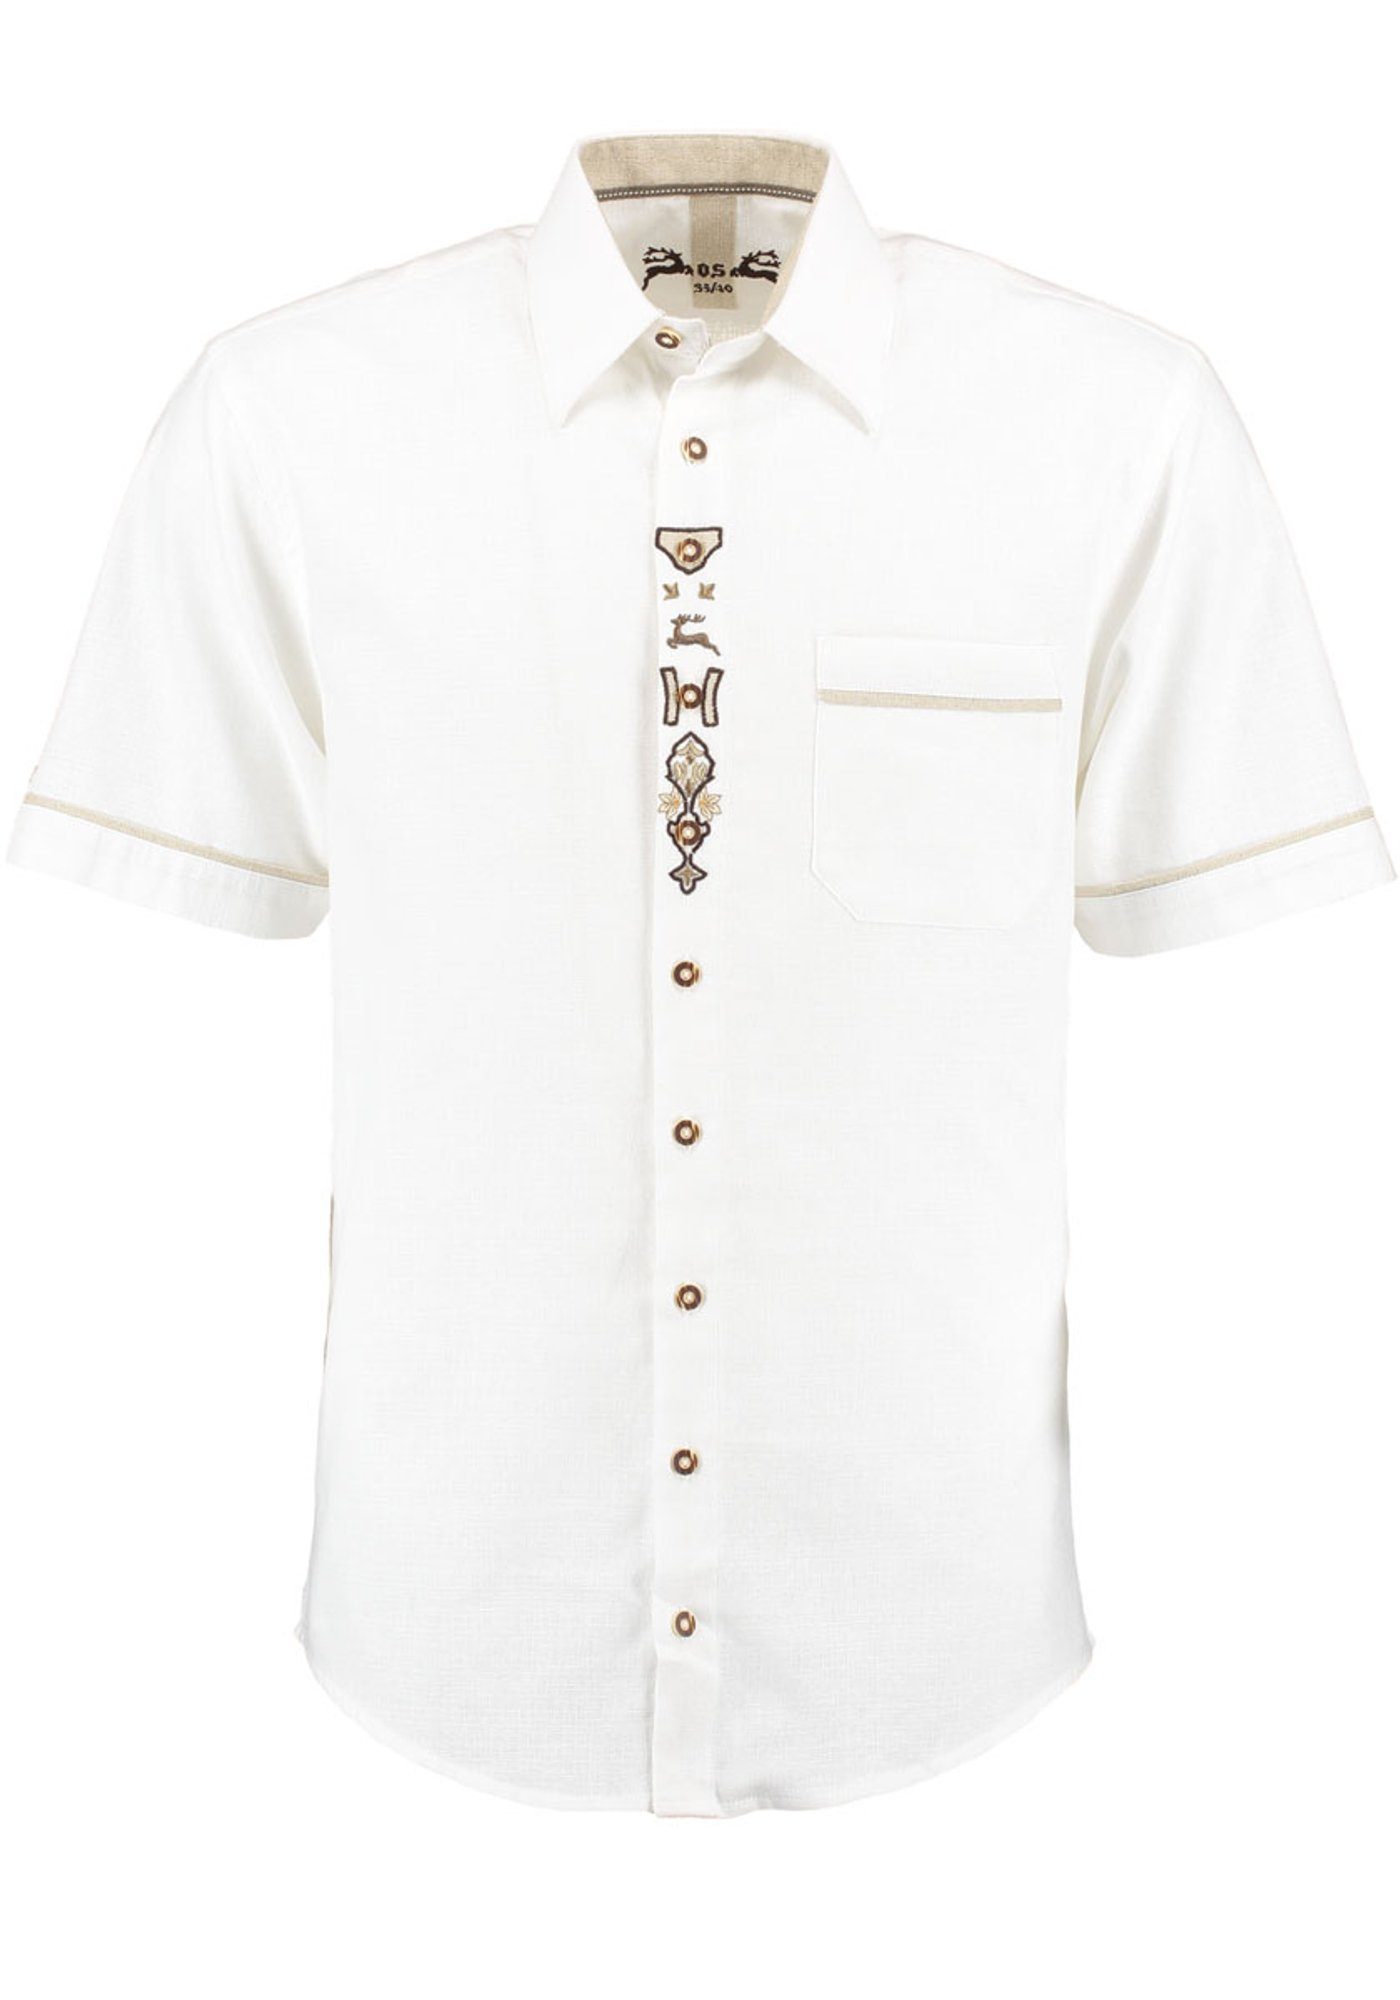 OS-Trachten mit Hirsch-Stickerei Trachtenhemd Brust Lavona der auf Kurzarmhemd